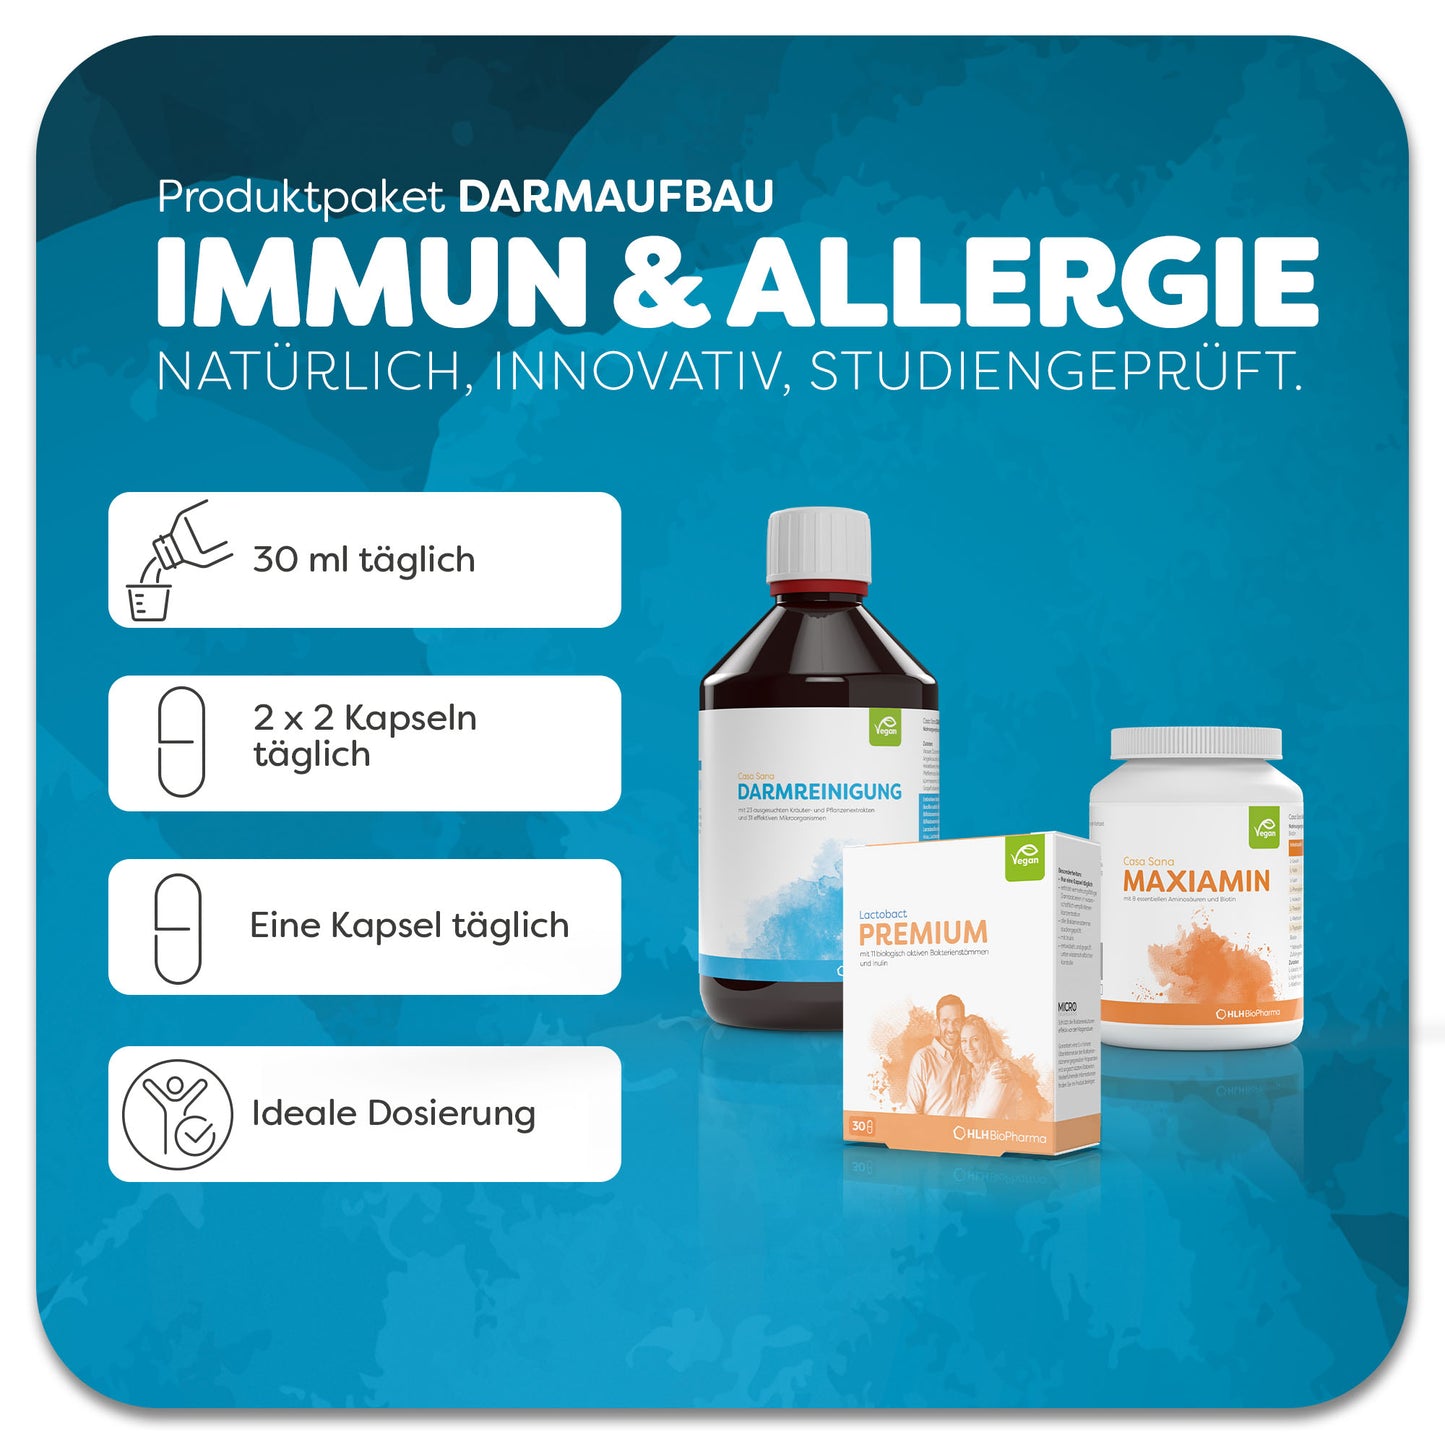 Informationsblatt mit Einnahmeempfehlung zum Produktpaket Darmaufbau Immun & Allergie